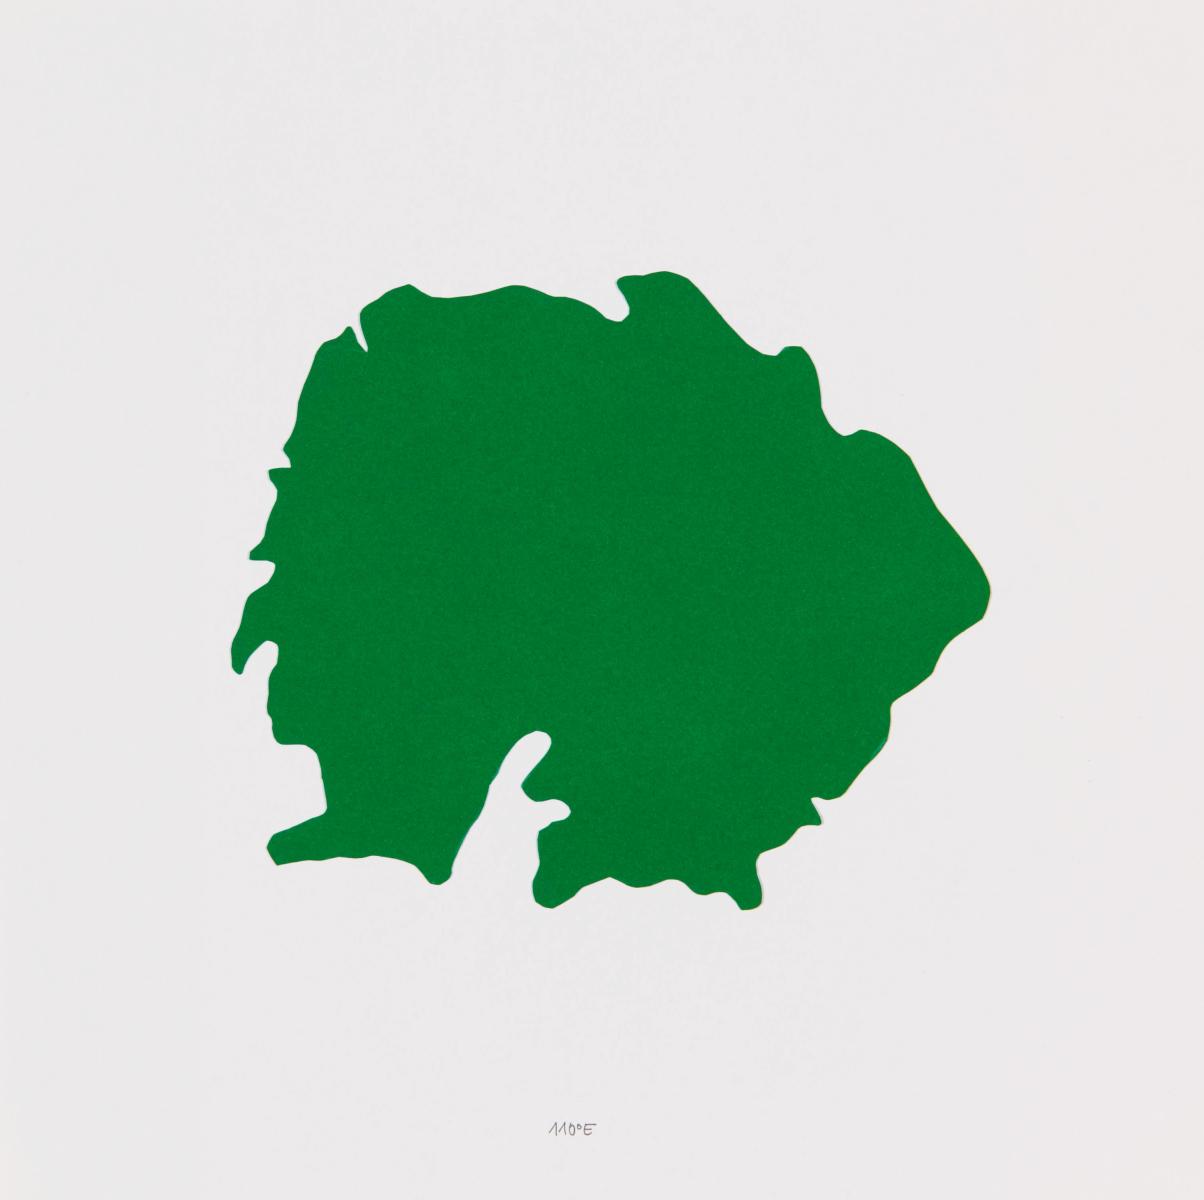 Ubbo Kuegler - Inseln Mappe mit 34 Inseln, 56800-2618, Van Ham Kunstauktionen